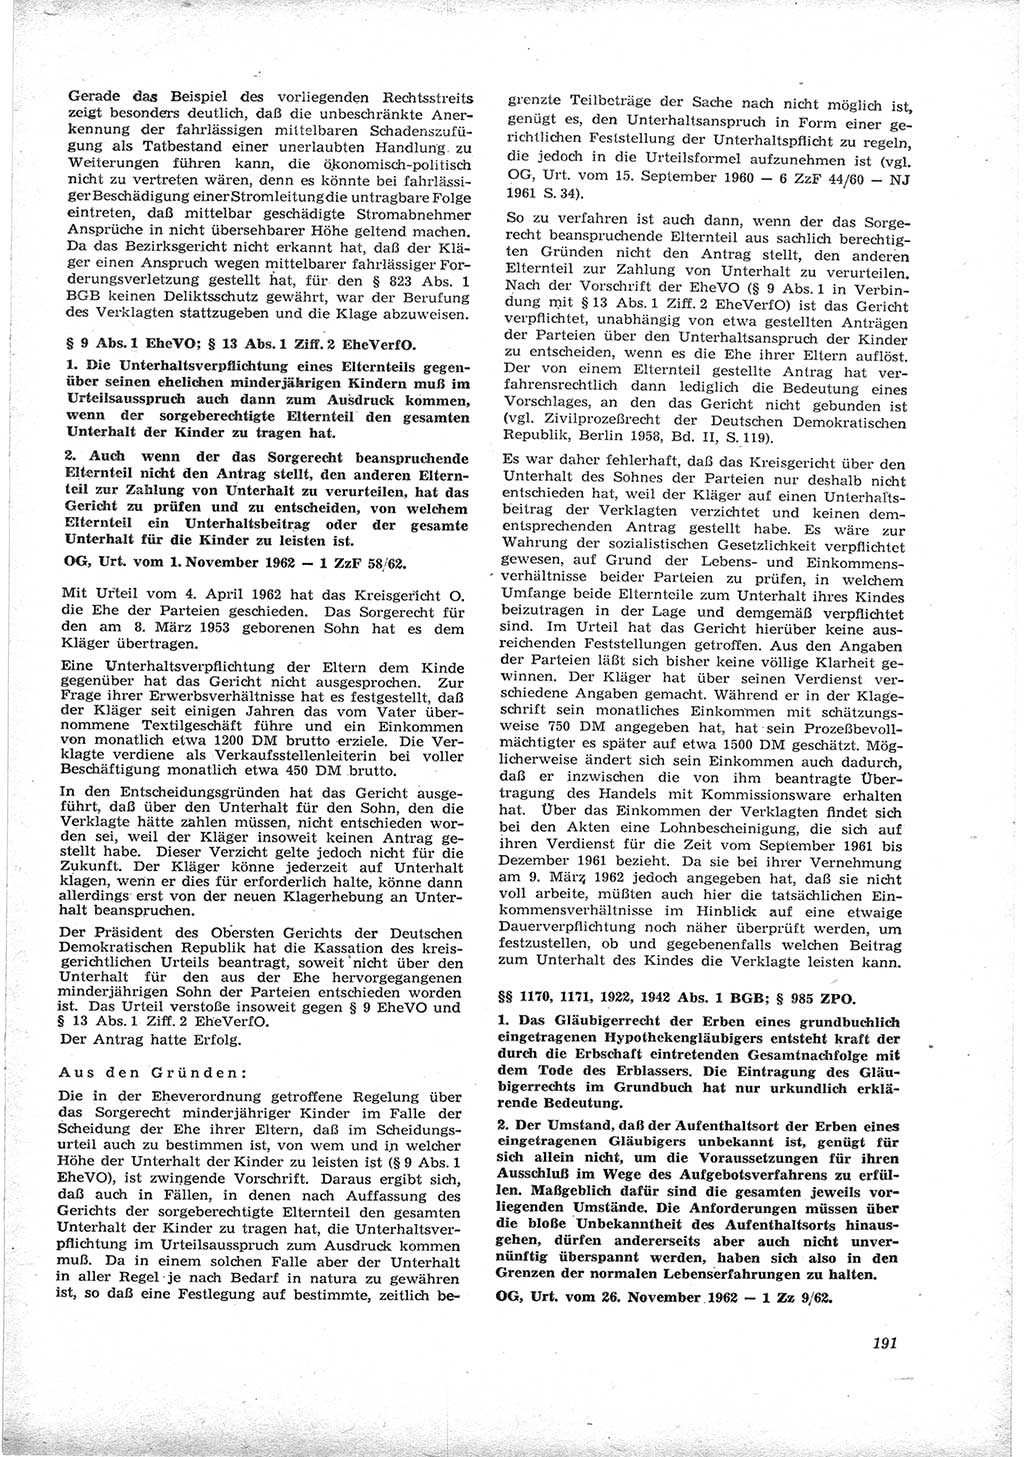 Neue Justiz (NJ), Zeitschrift für Recht und Rechtswissenschaft [Deutsche Demokratische Republik (DDR)], 17. Jahrgang 1963, Seite 191 (NJ DDR 1963, S. 191)